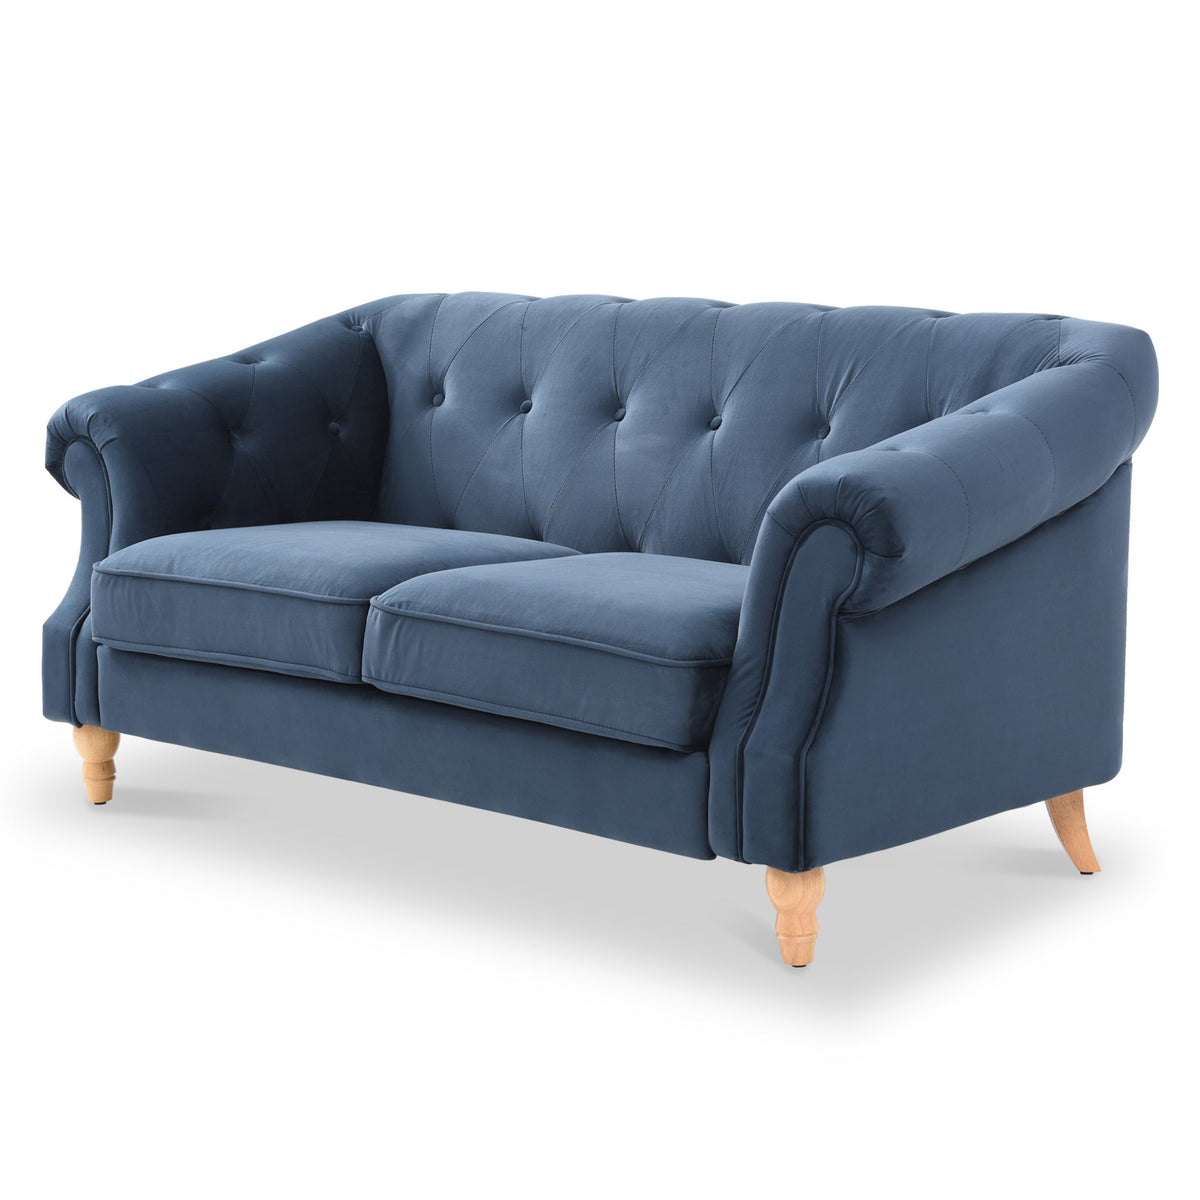 Darius Navy Blue Chesterfield Velvet 2 Seater Sofa from Roseland Furniture